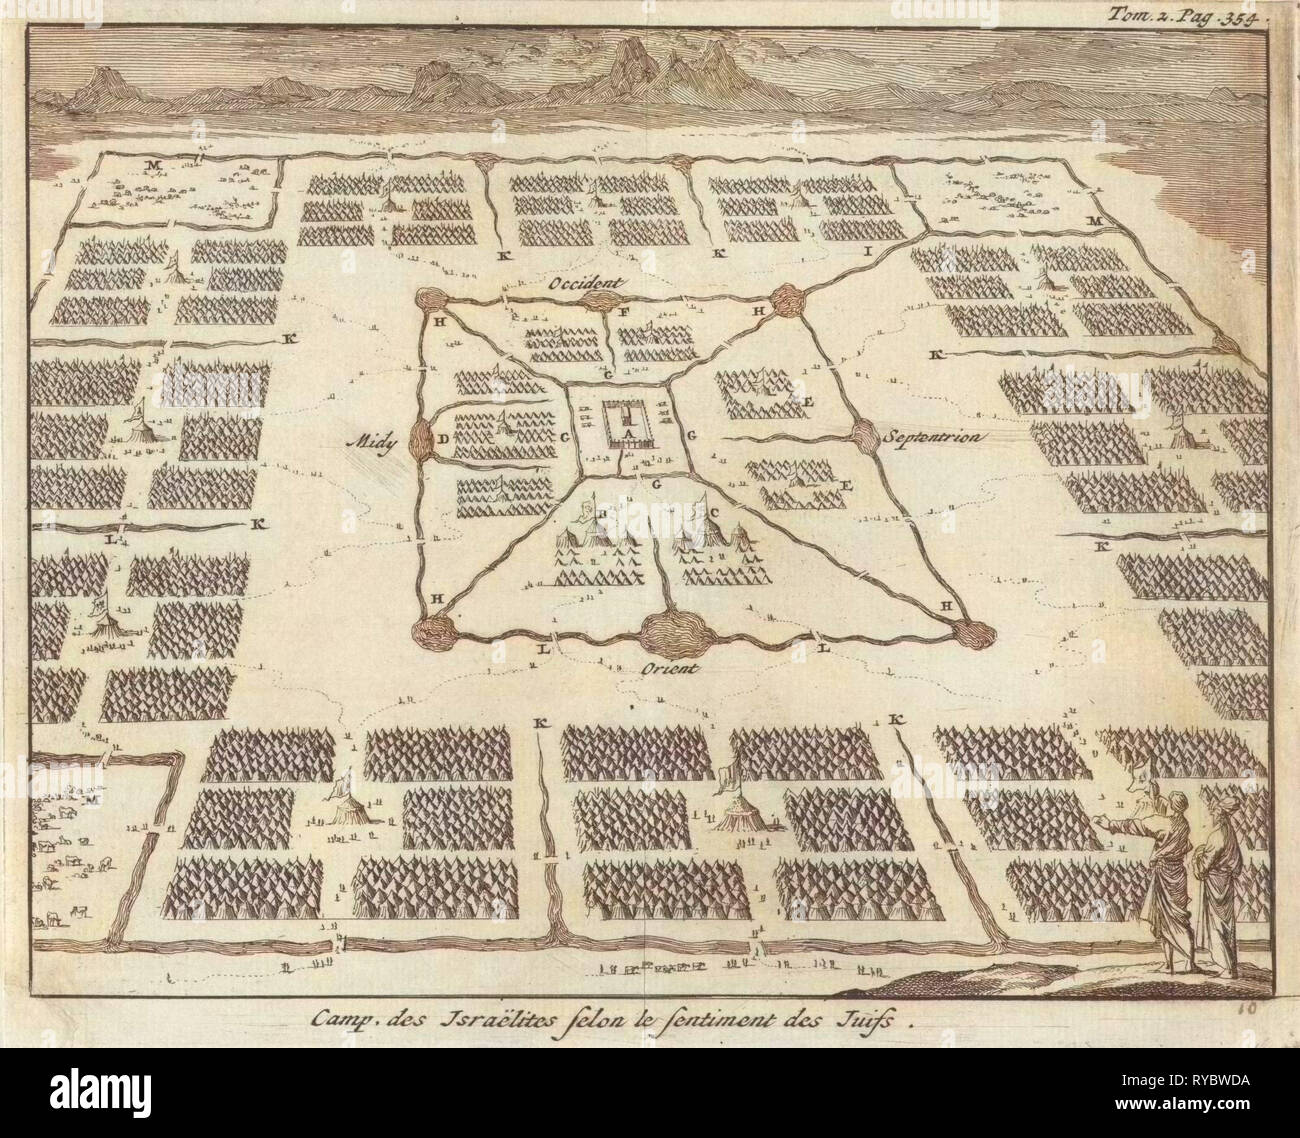 Tabernacle entouré de camps des douze tribus d'Israël, Jan Luyken, Pieter Mortier, 1705 Banque D'Images